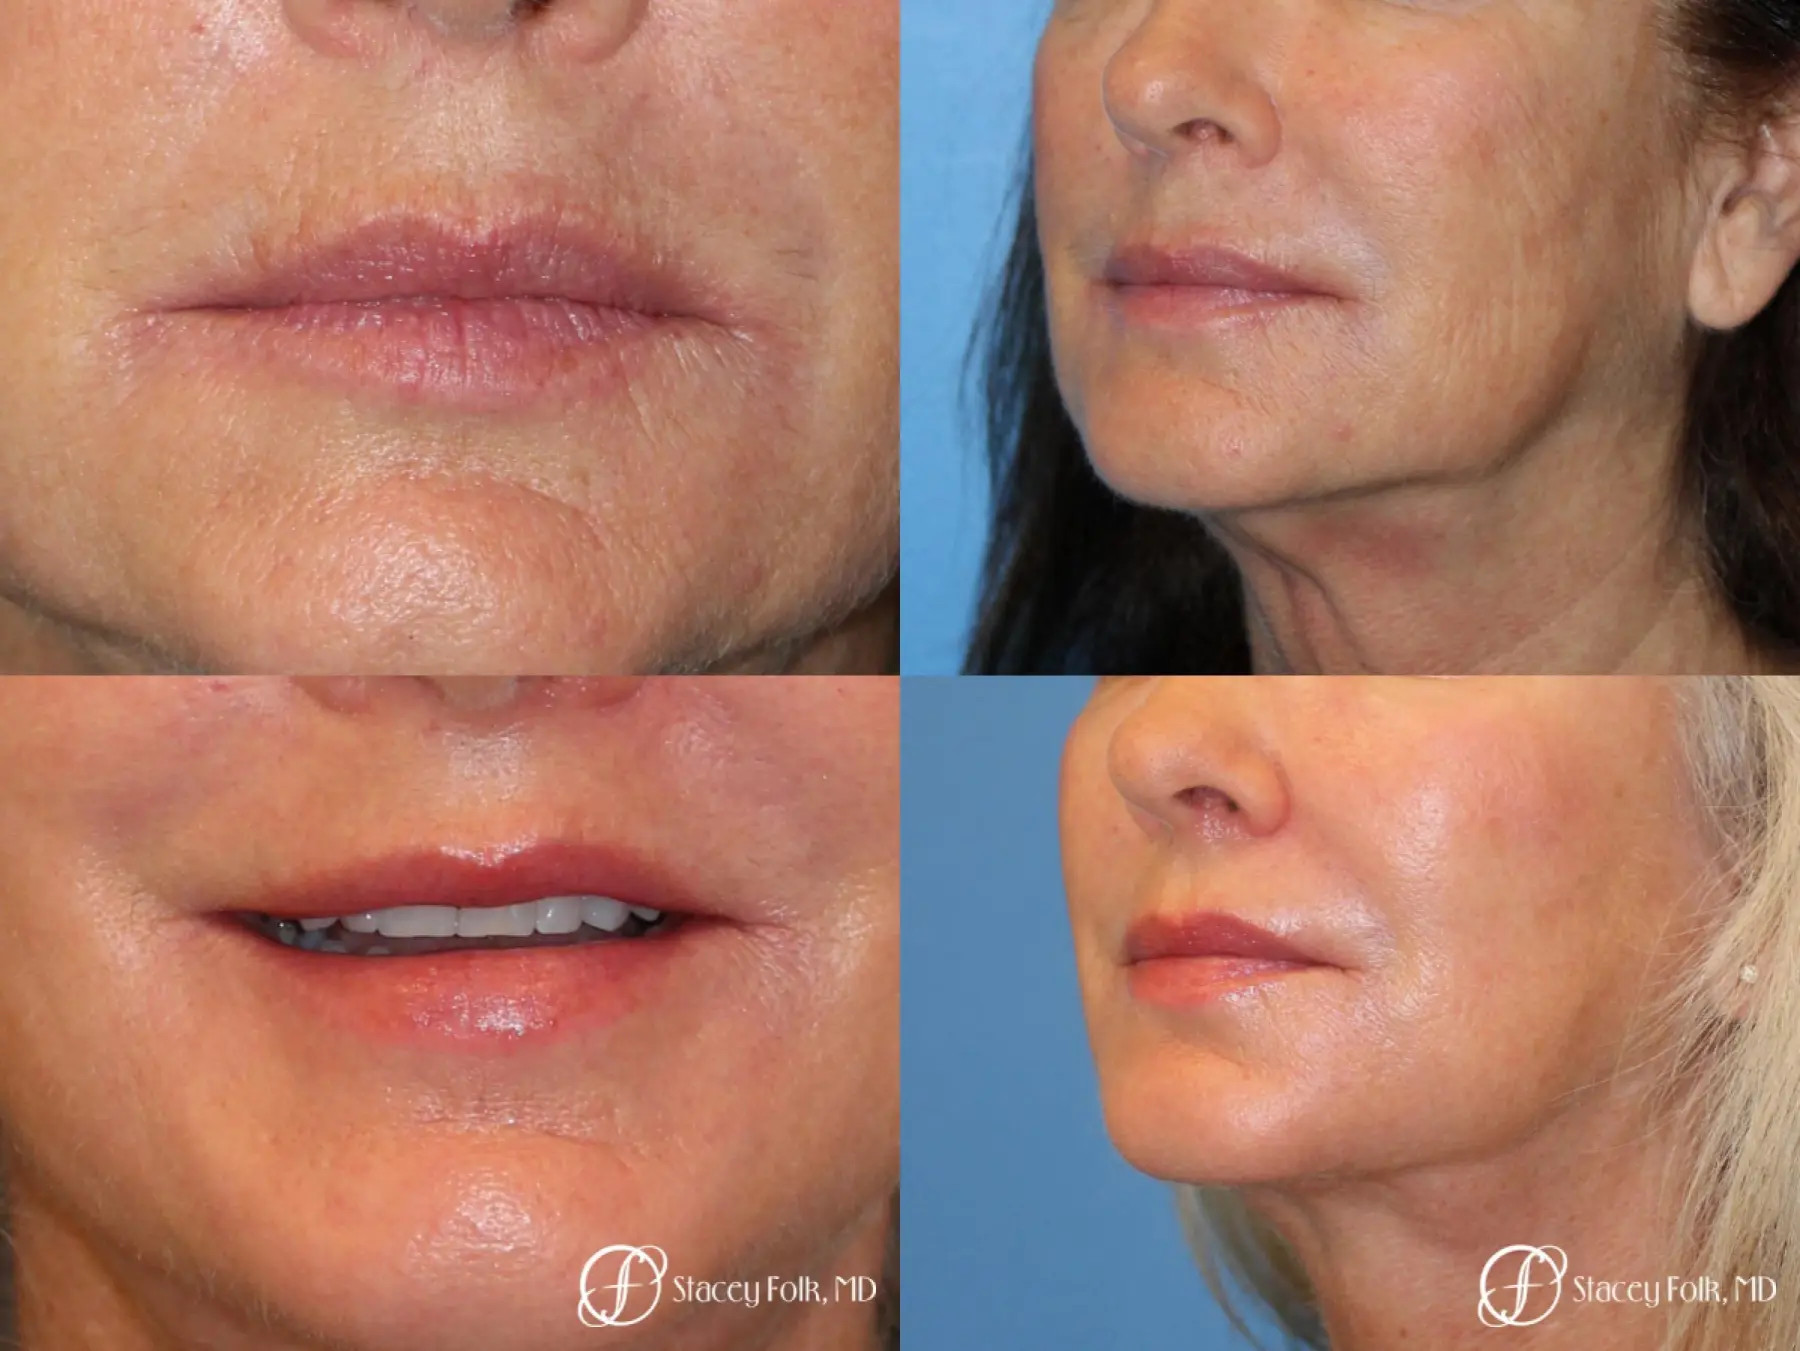 Denver Laser Skin Resurfacing 8276 - Before and After